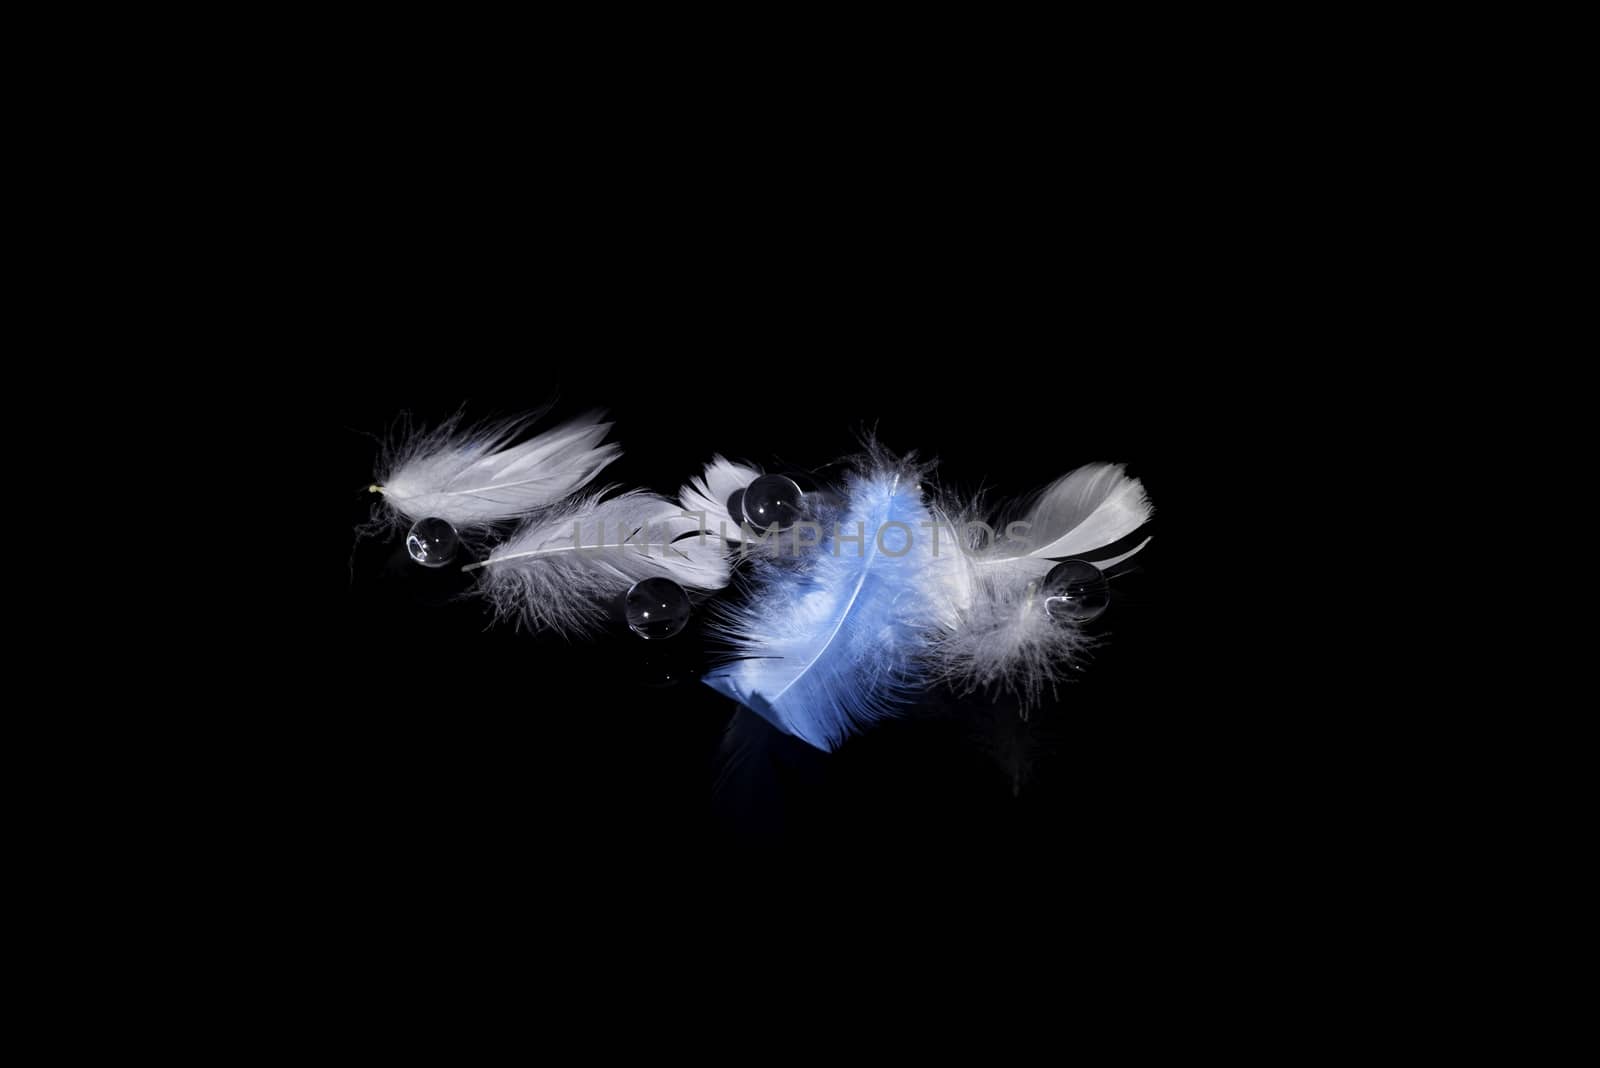 Blured  feather background by stellar